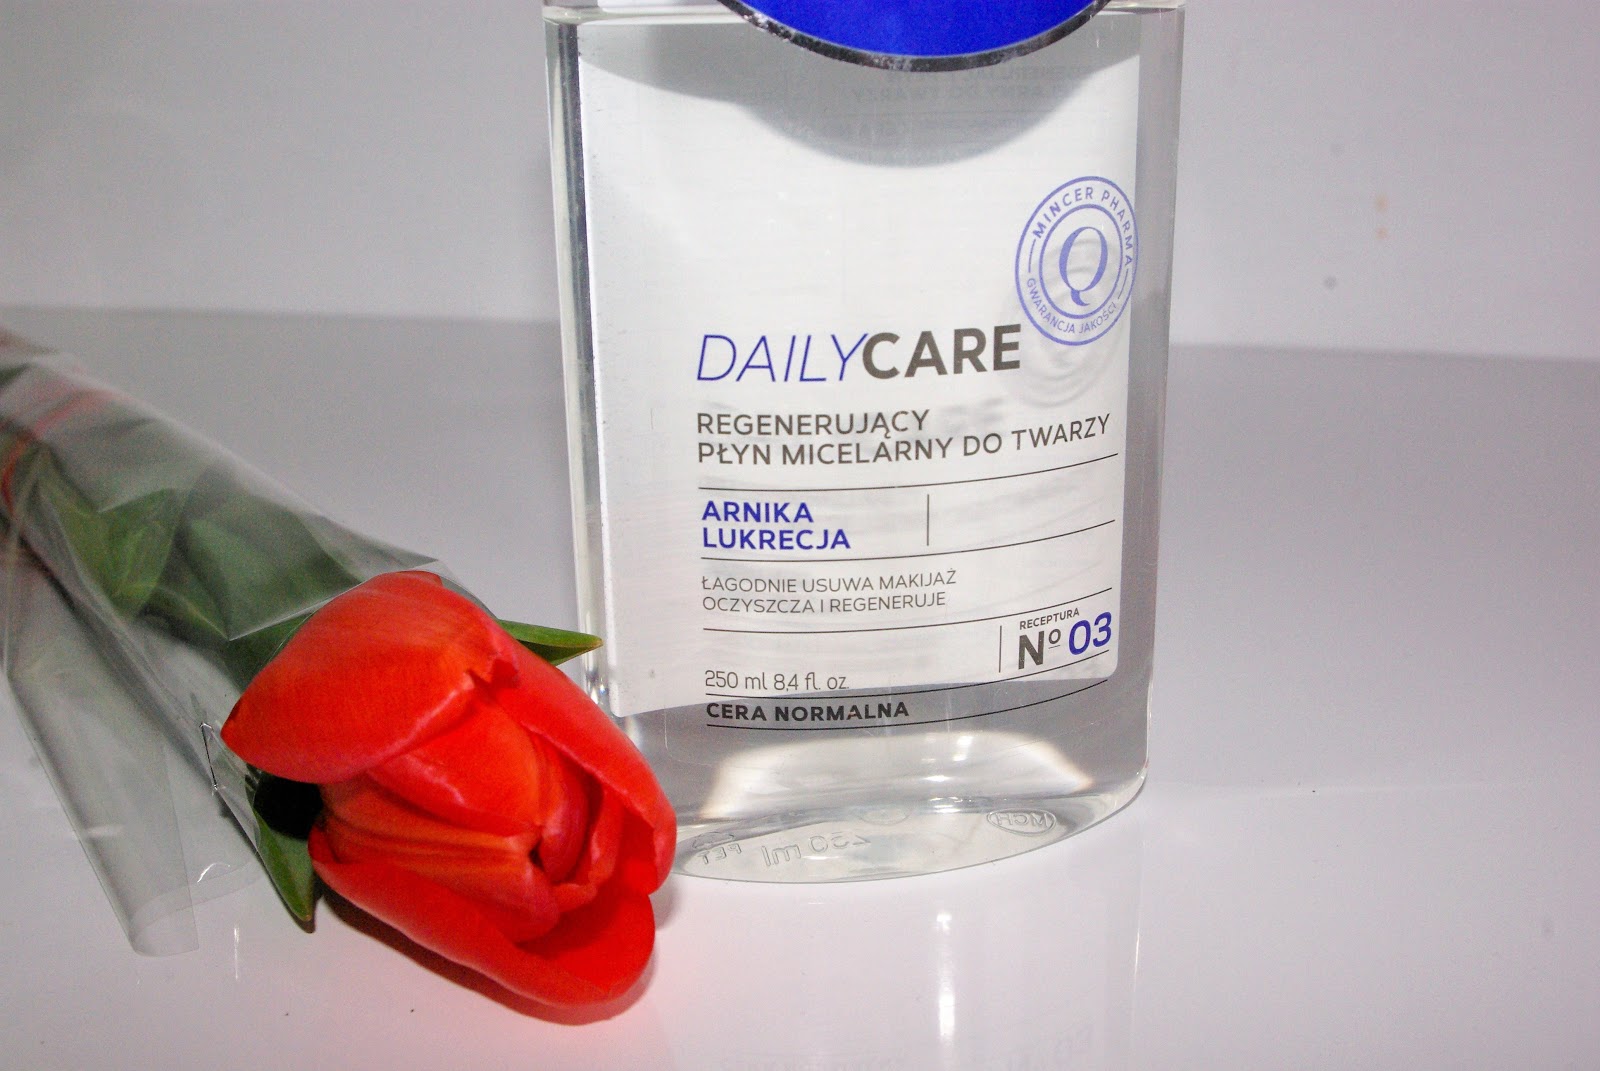 Regenerujący płyn micelarny do twarzy - Mincer Pharma www.dagmara-rek.pl